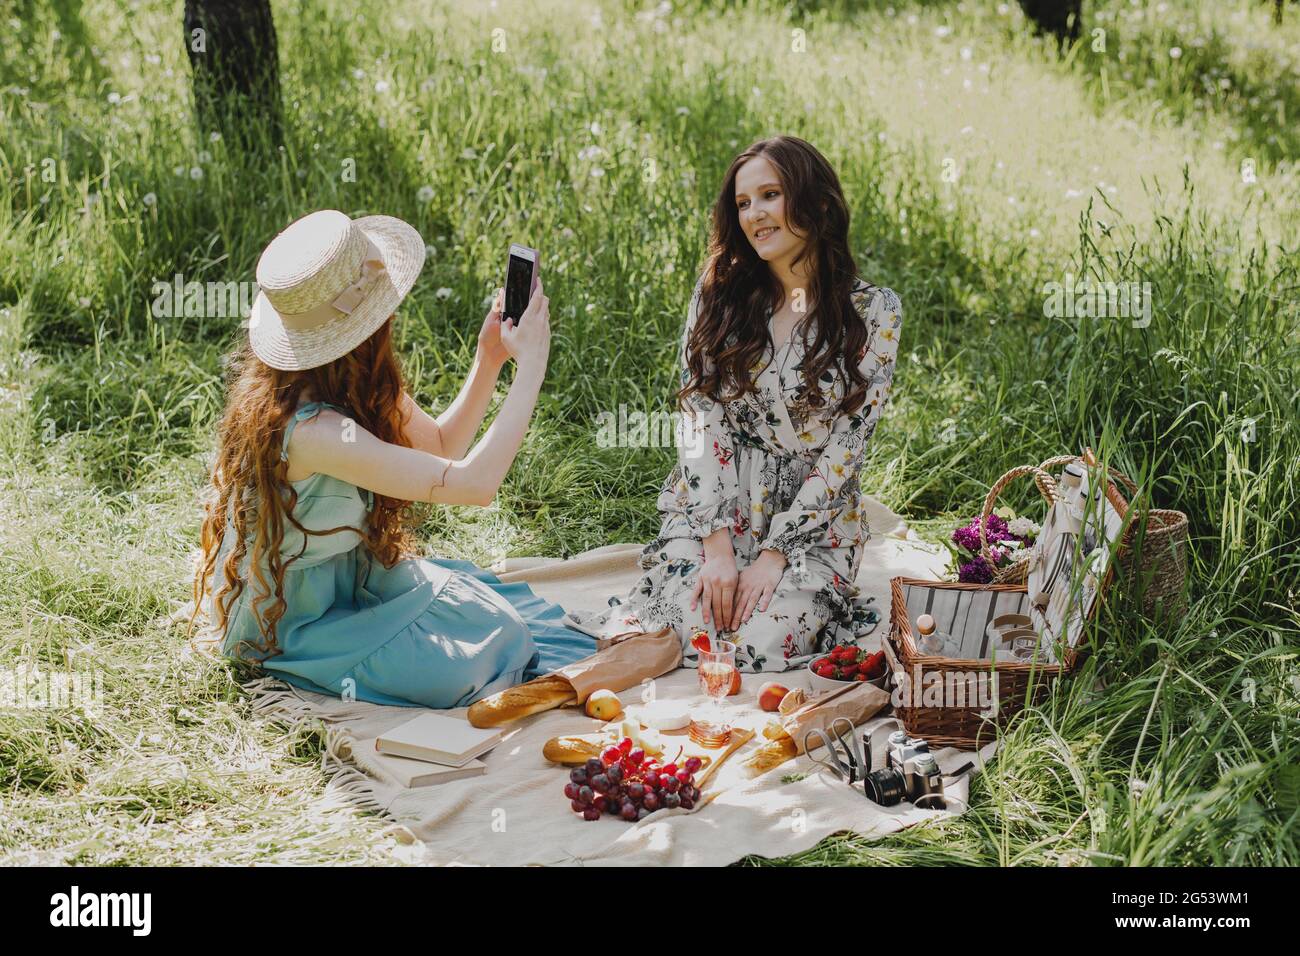 Glückliche Frau, die auf dem Smartphone beim Picknick im Freien Fotos von ihrer besten Freundin macht. Stockfoto